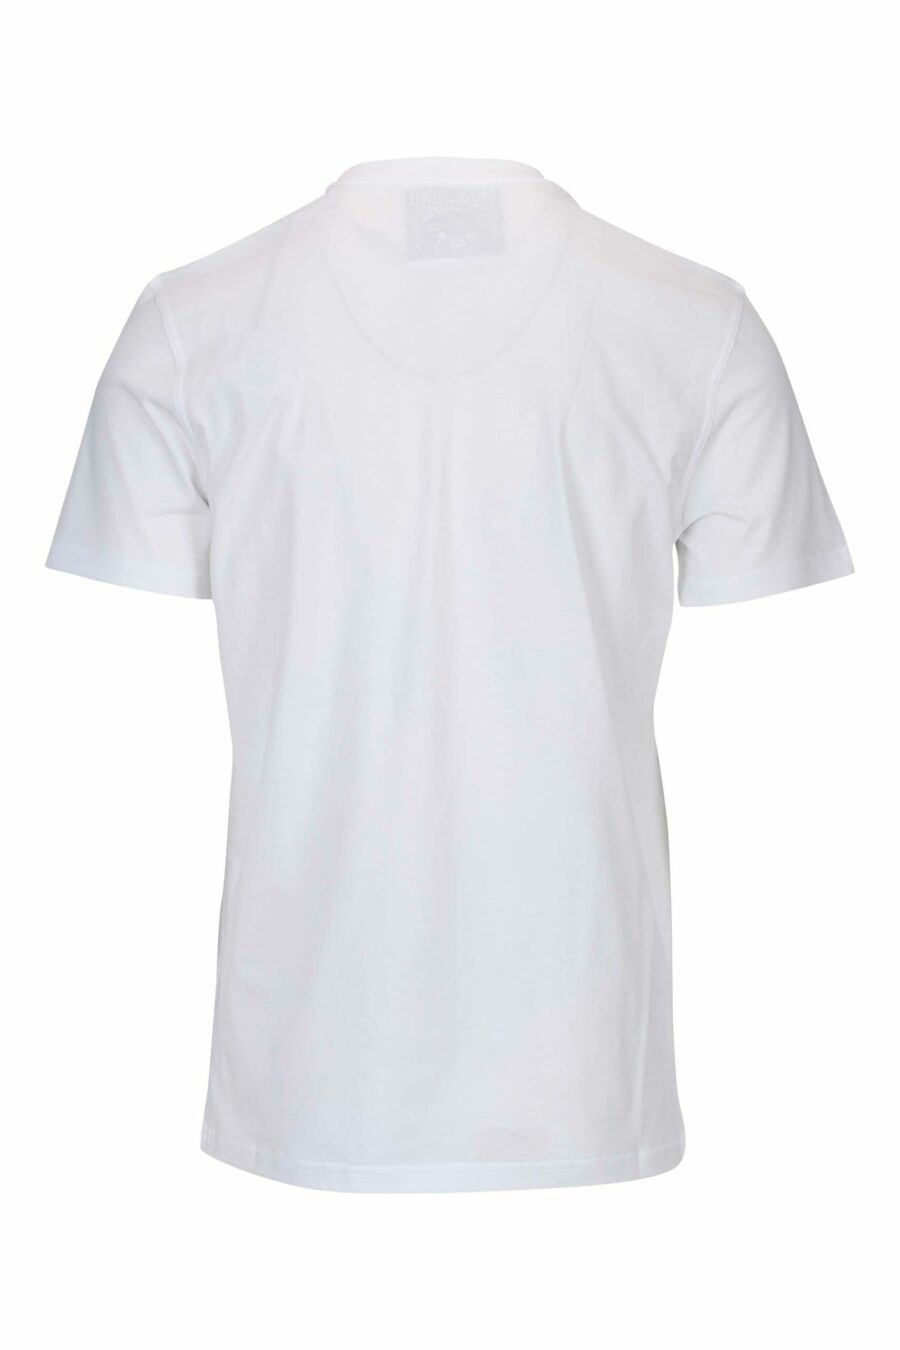 T-shirt blanc avec minilogue d'ours à pois monochrome - 667113455822 1 scaled